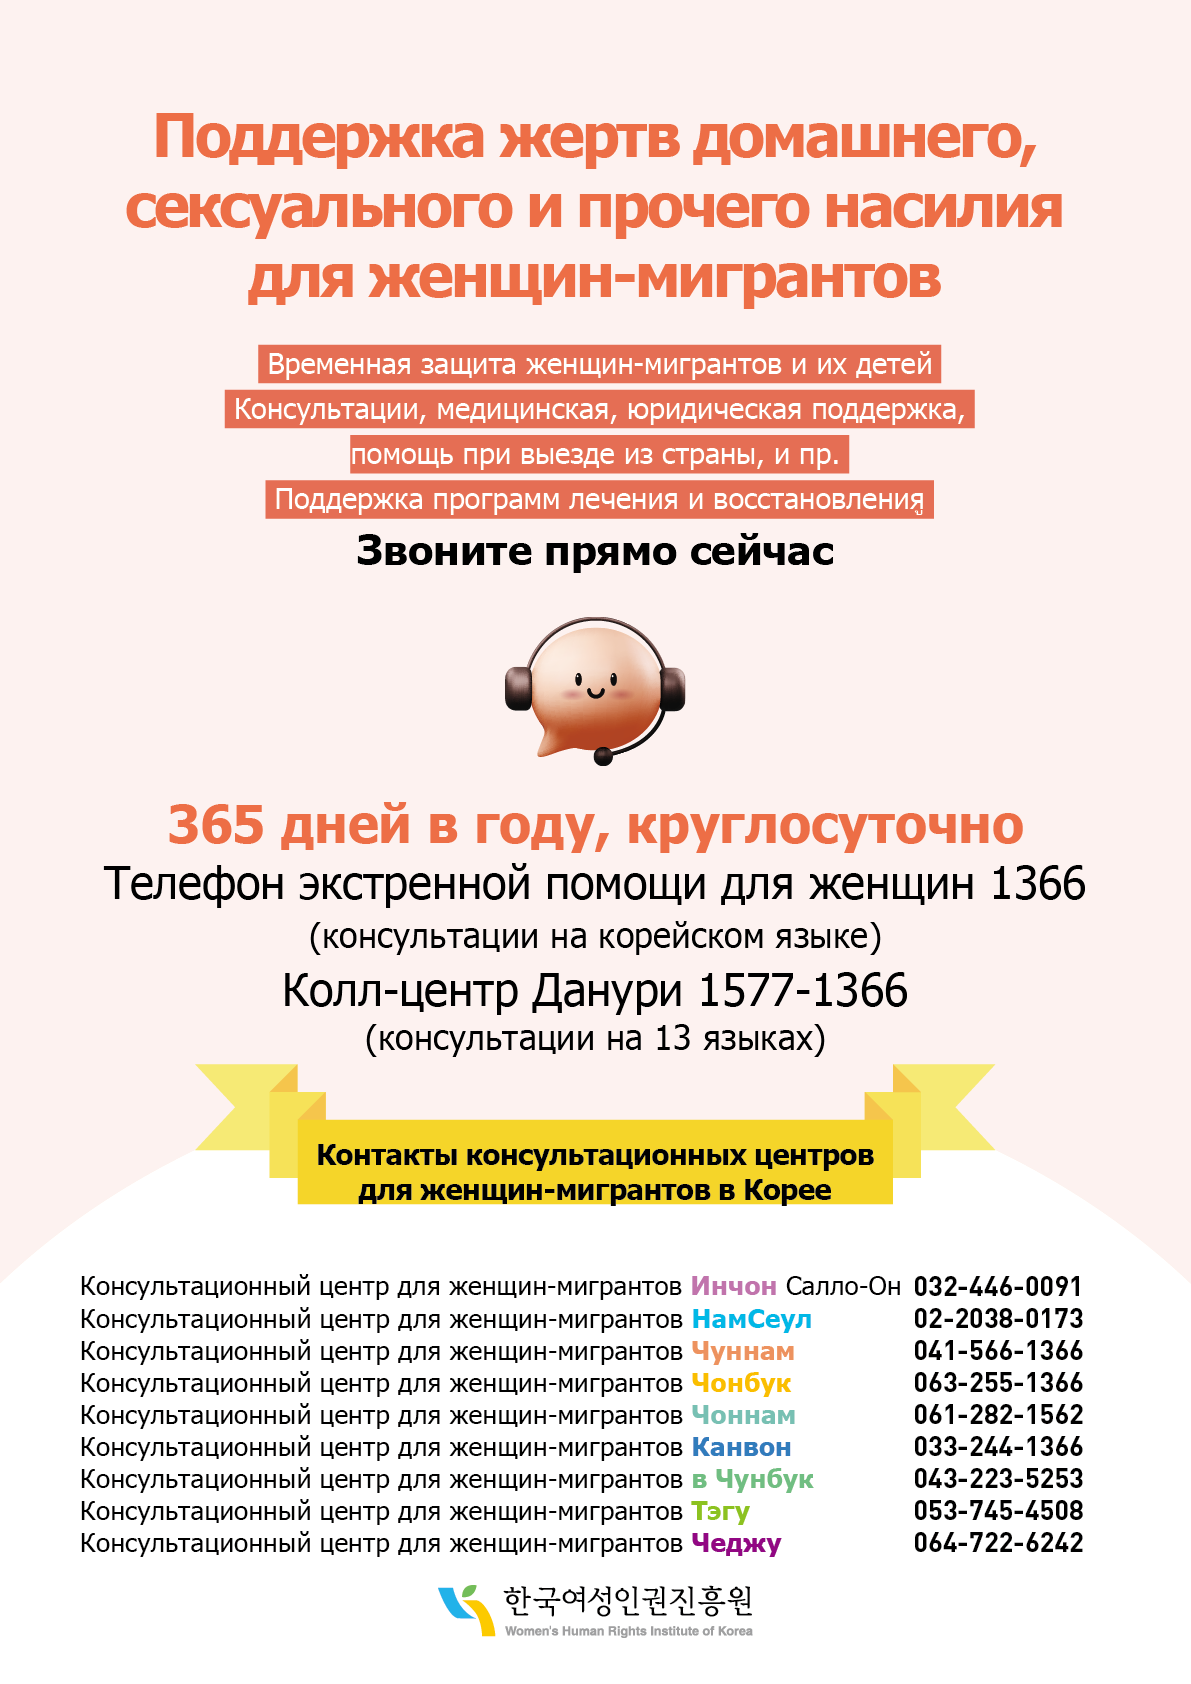 이주여성 폭력피해 보호·지원 안내 웹포스터(러시아어)_300.png